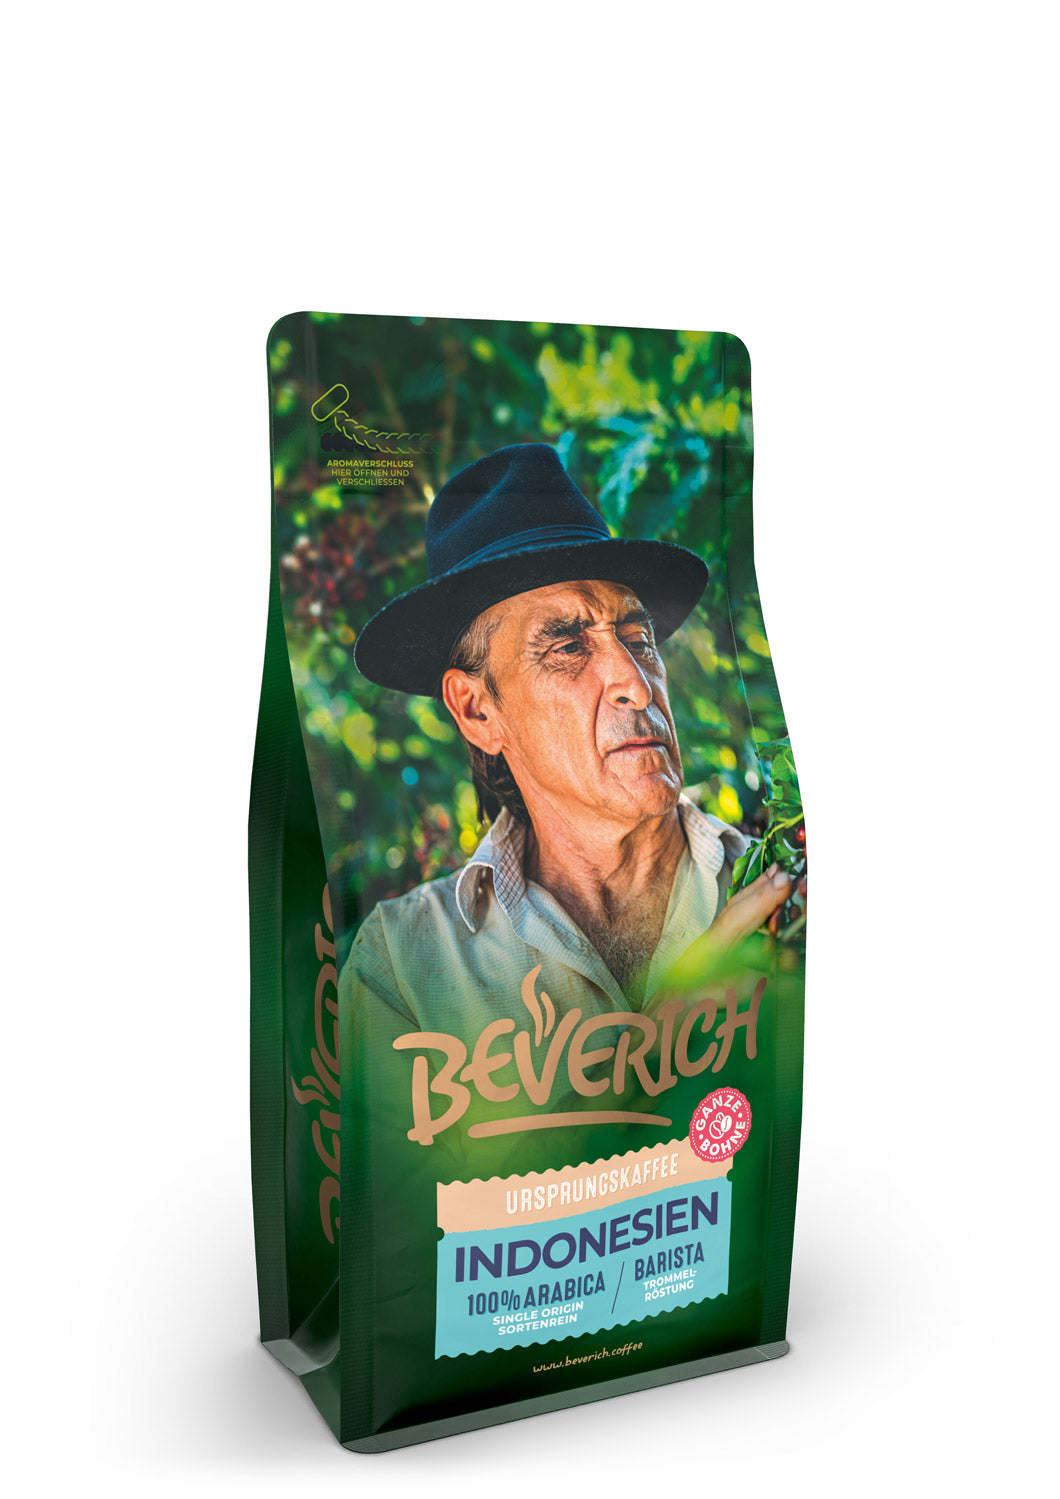 BEVERICH - Ursprungskaffee "Indonesien" (250g)